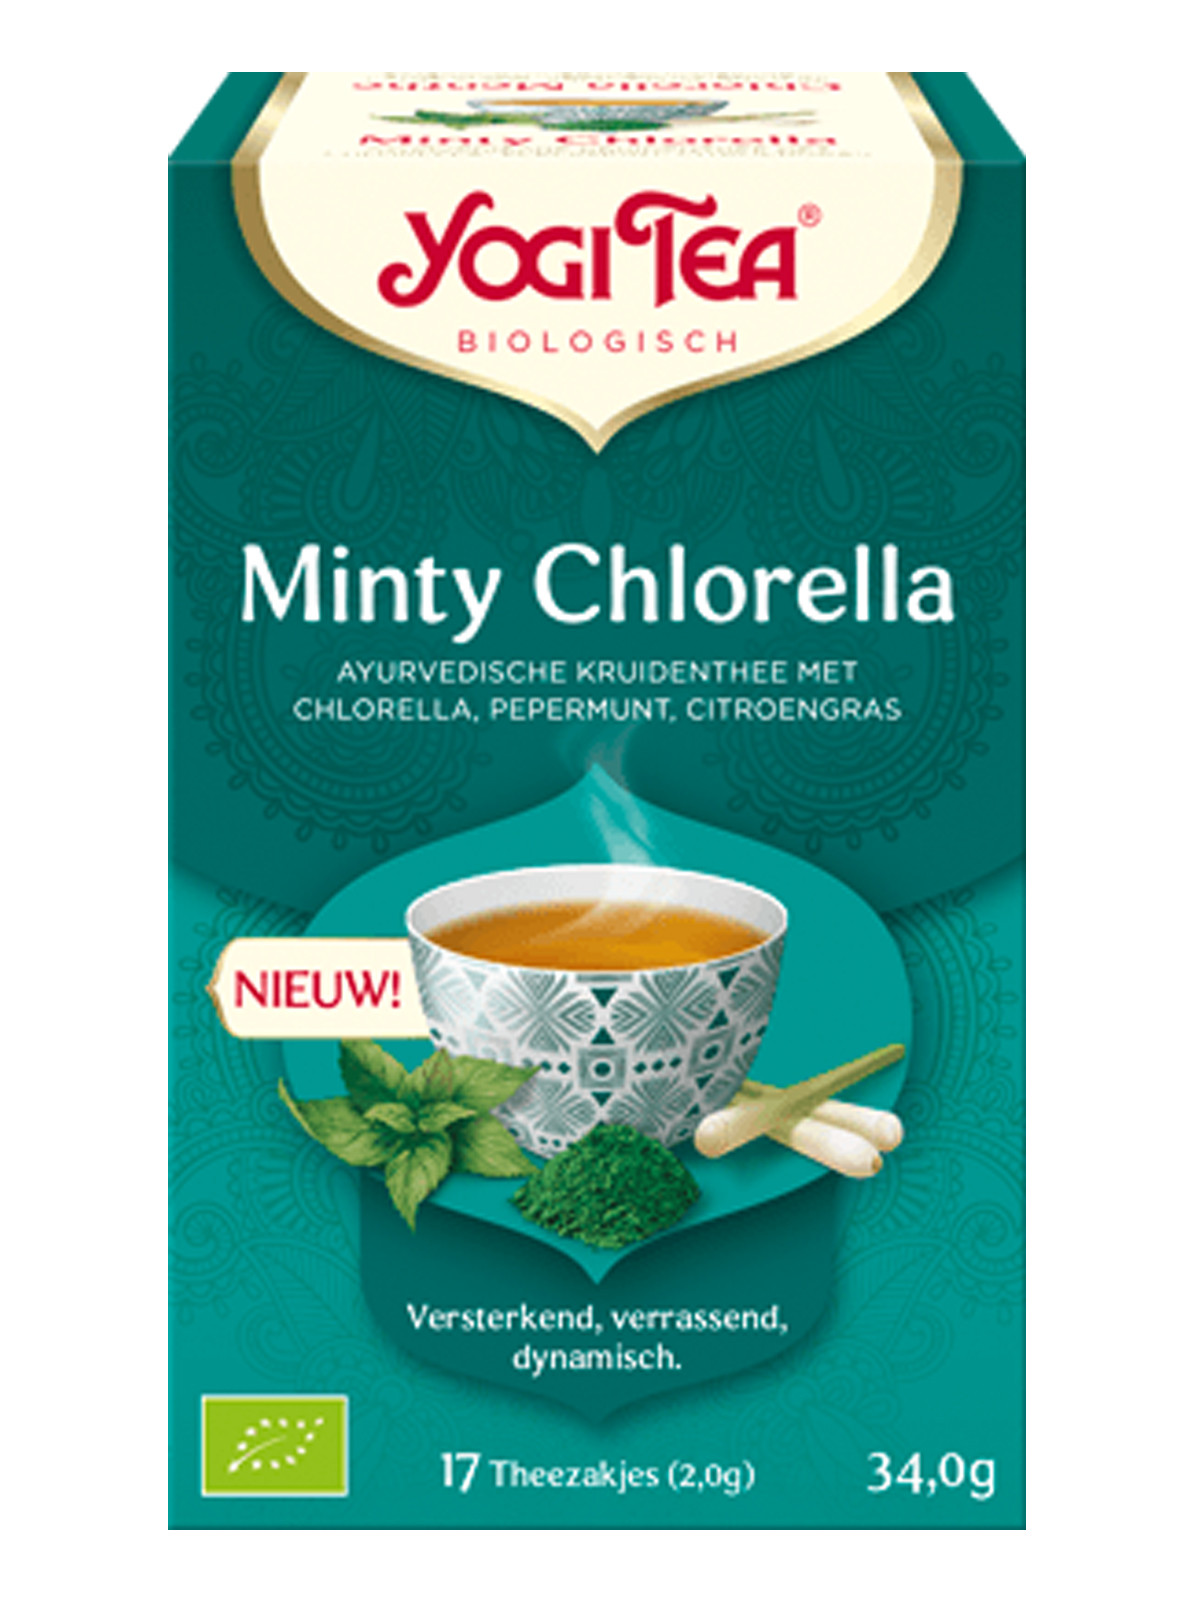 Yogi Tea - Minty Chlorella